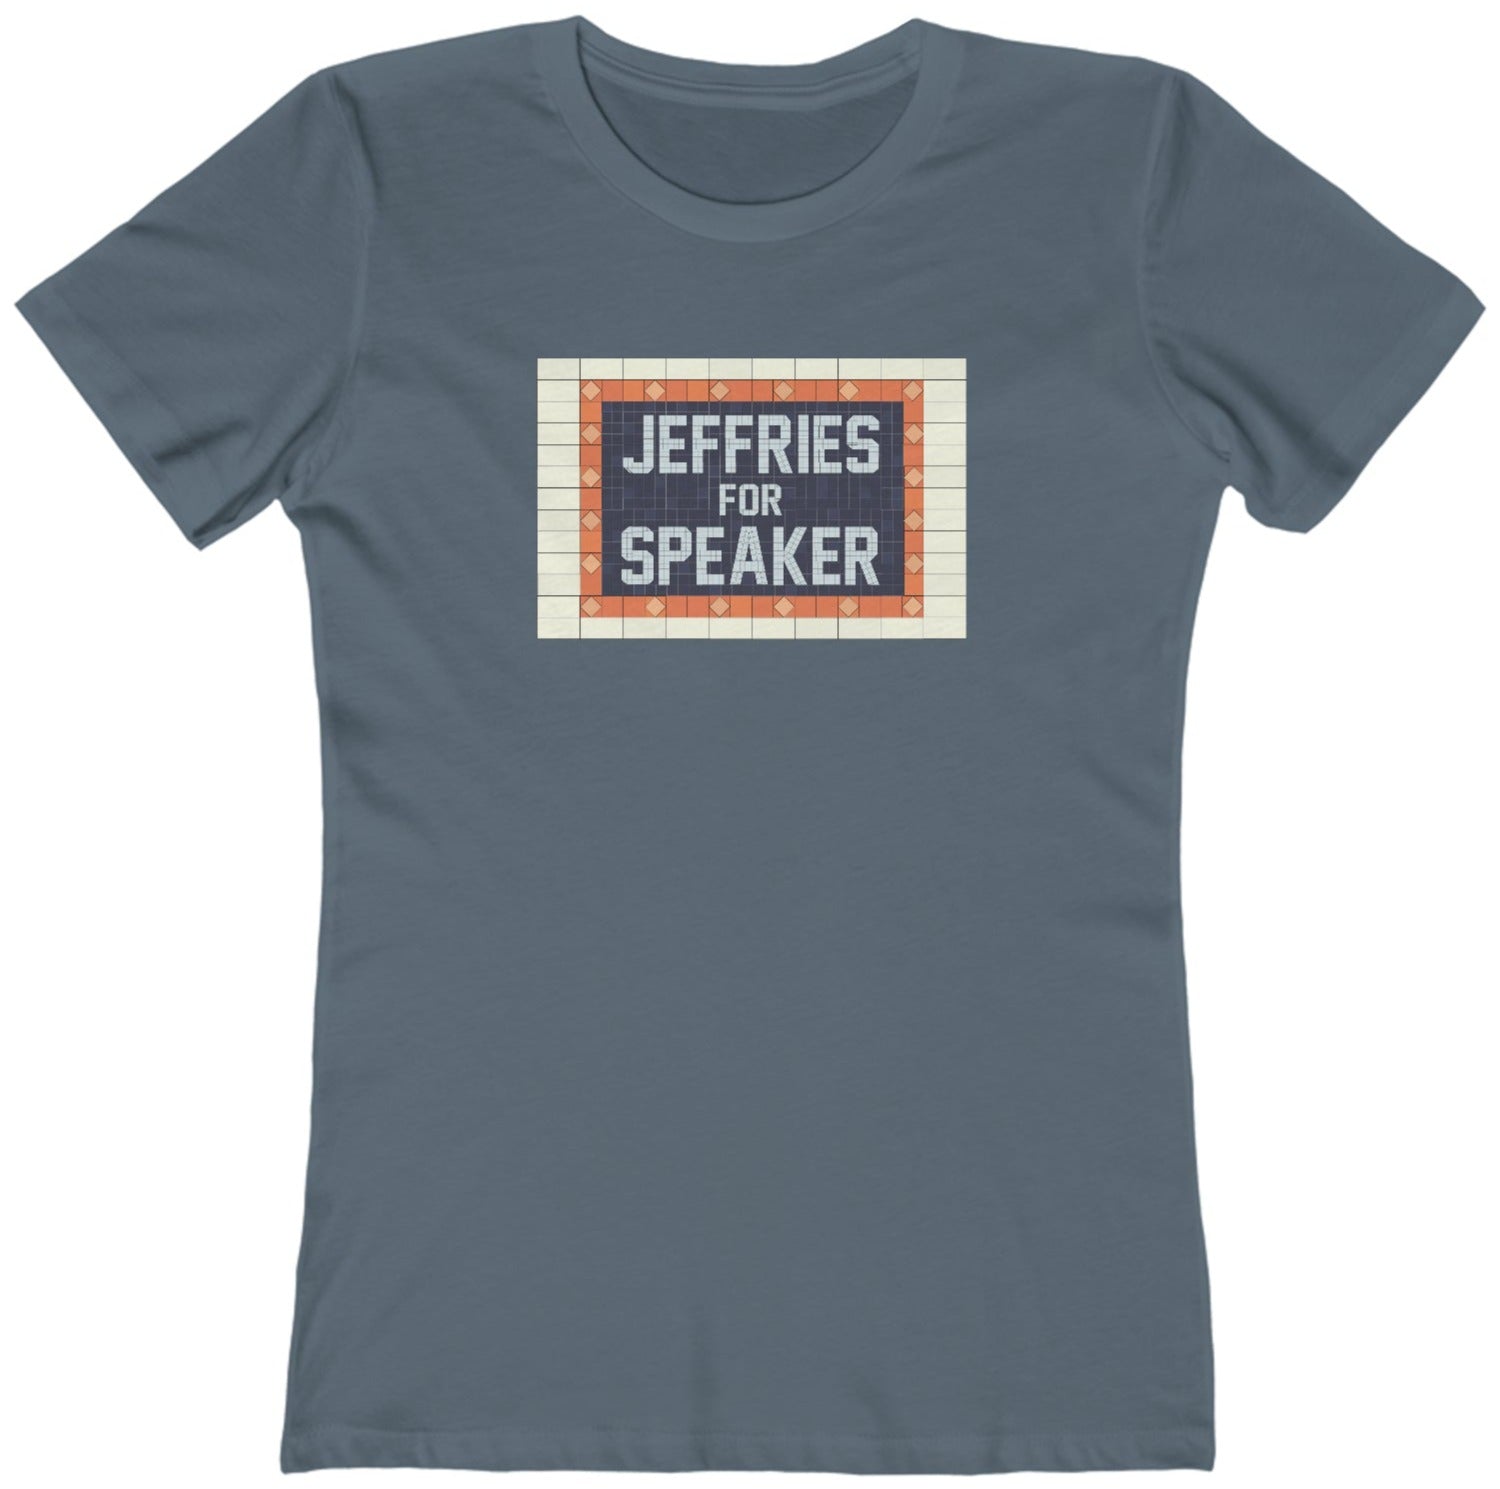 Jeffries for Speaker t-shirt